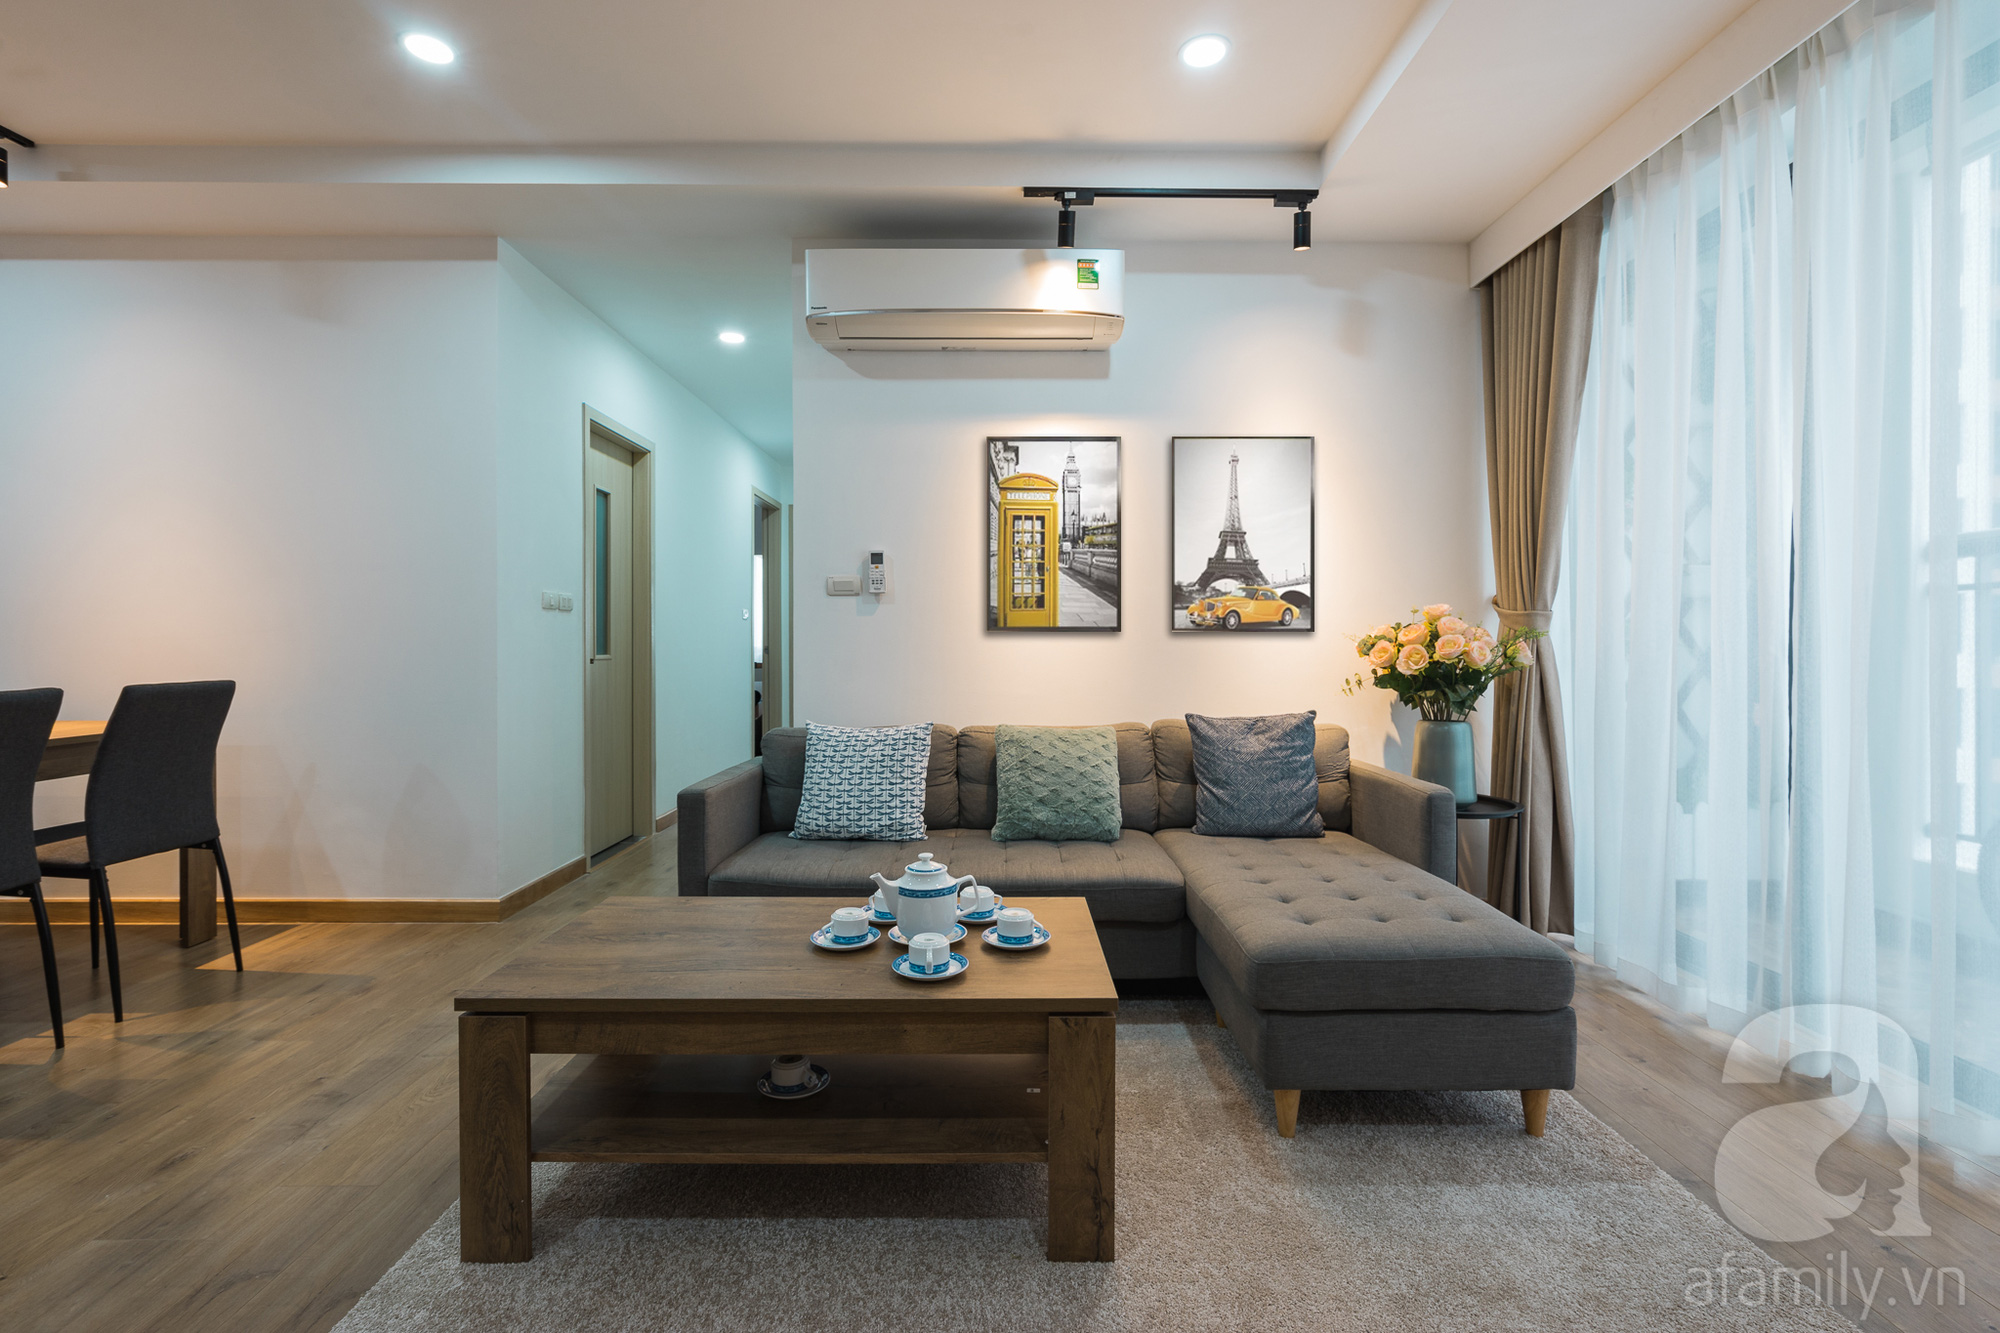 Tư vấn thiết kế căn hộ 110m2 với 3 phòng ngủ tiện nghi ở chung cư Ecolife, Tây Hồ với chi phí hoàn thiện nội thất 290 triệu - Ảnh 10.